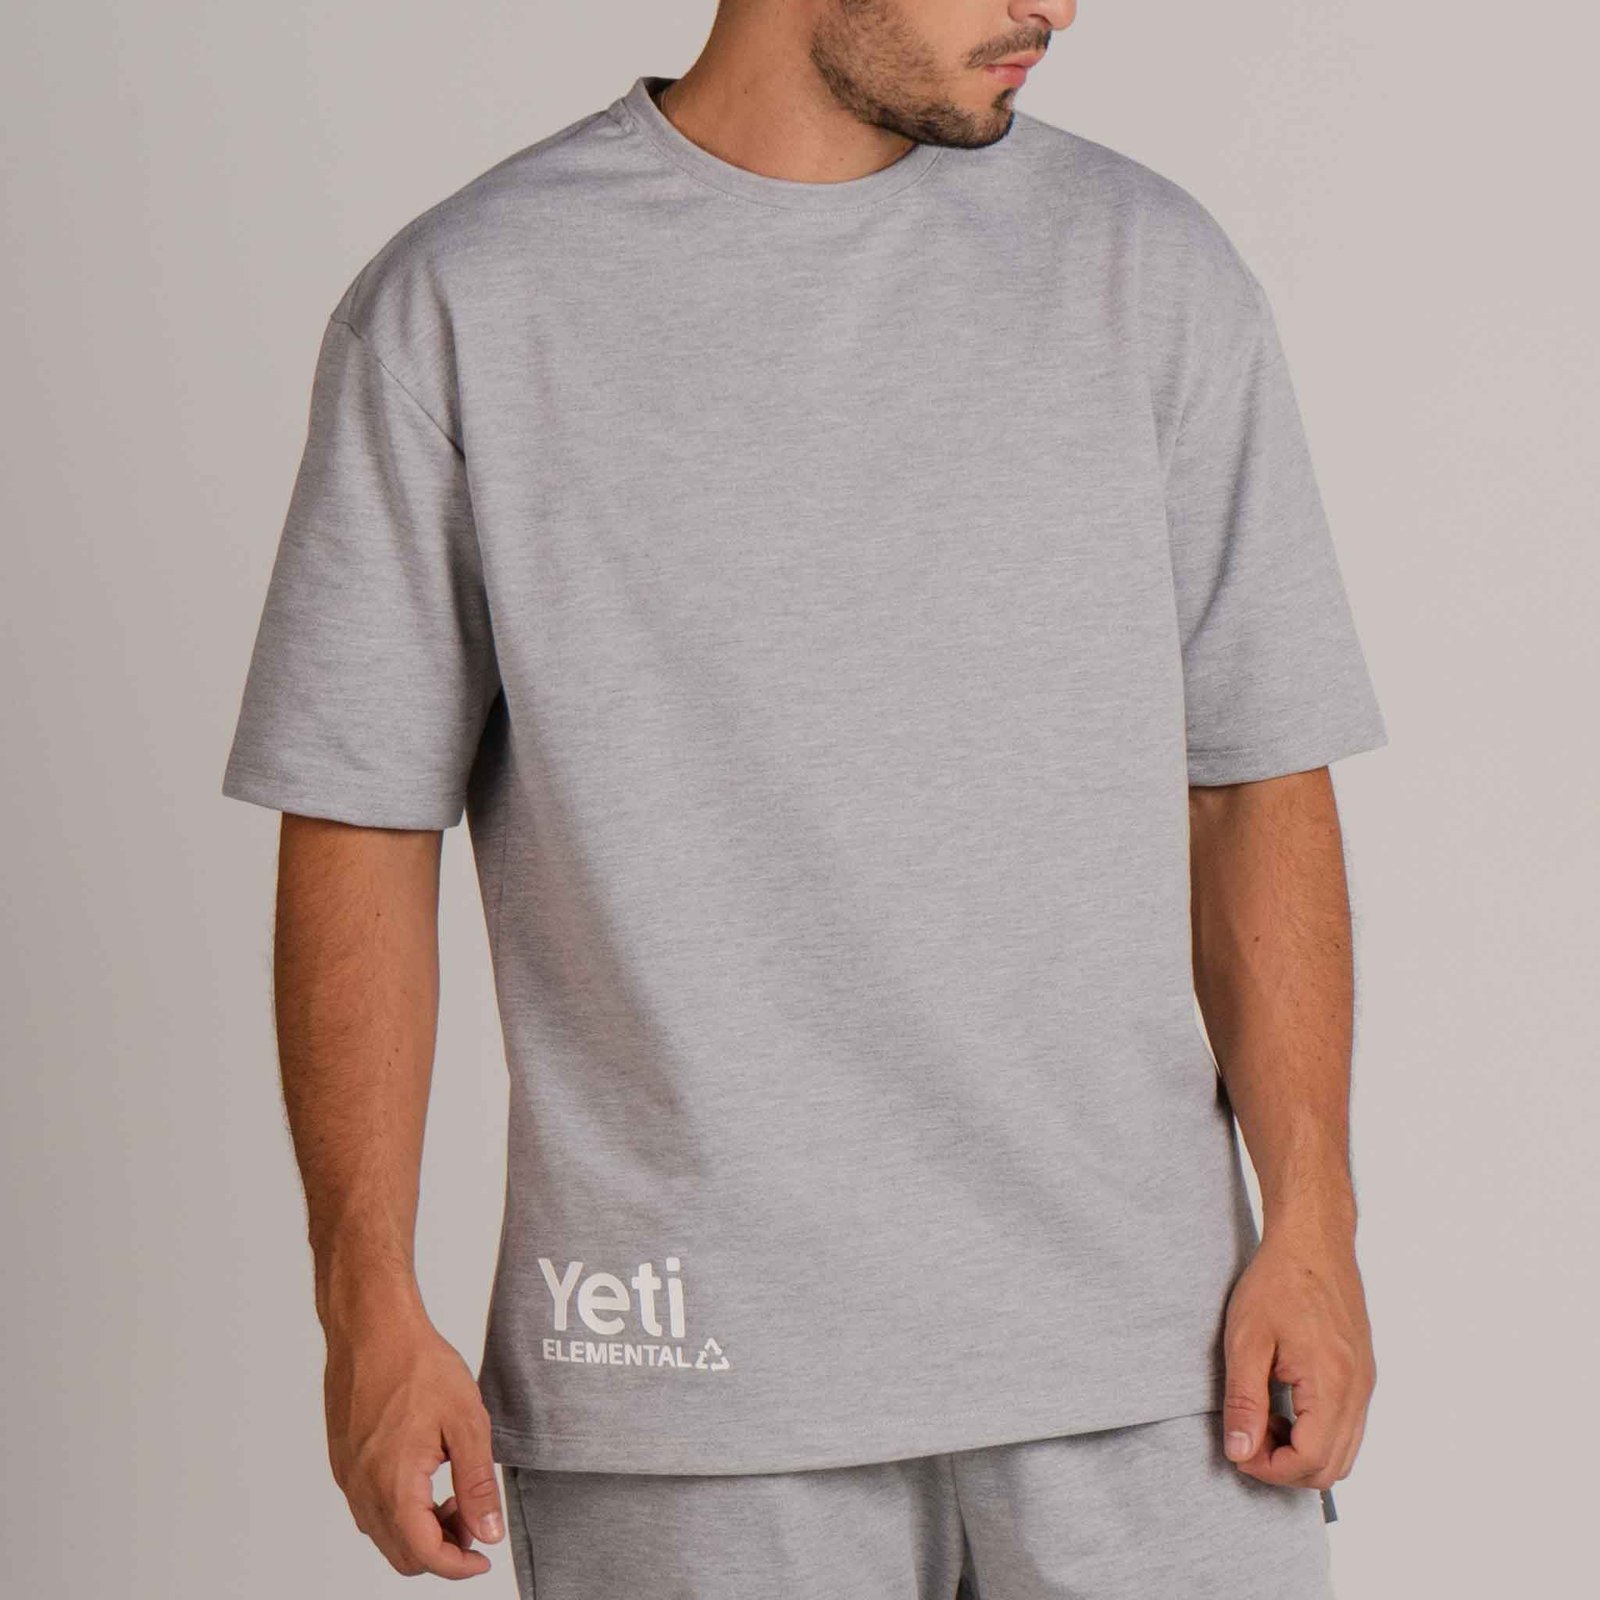 Camiseta oversize mujer - Camiseta oversize Elemental - Yeti